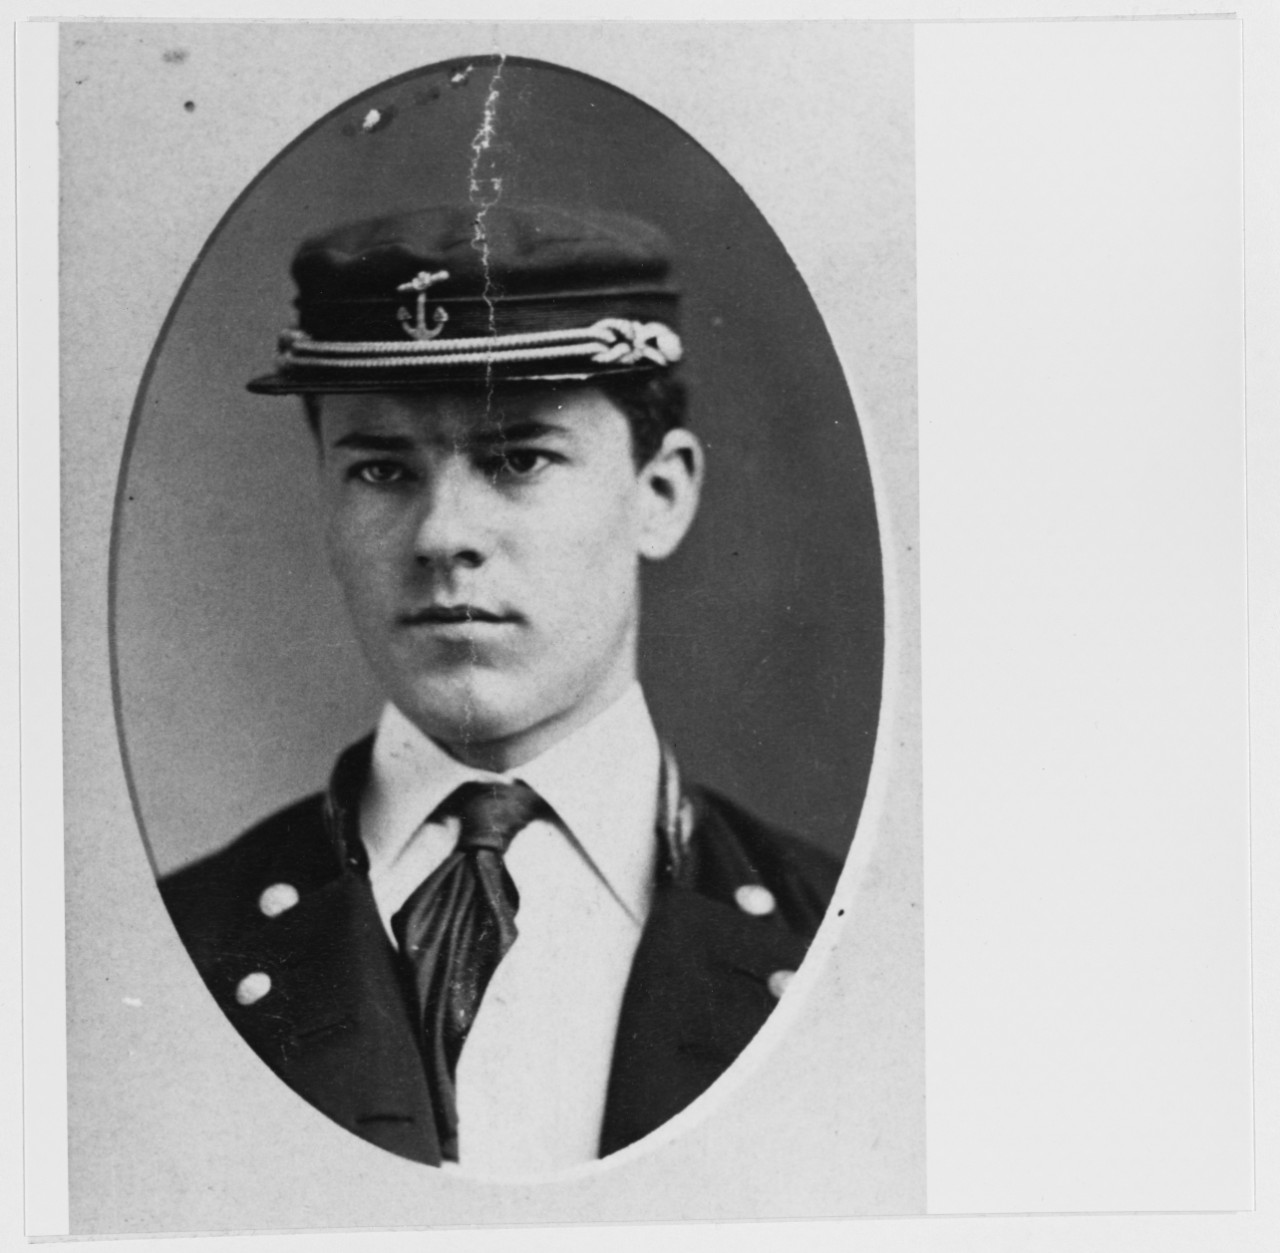 Cadet Midshipman Clarence E. Lee, USN